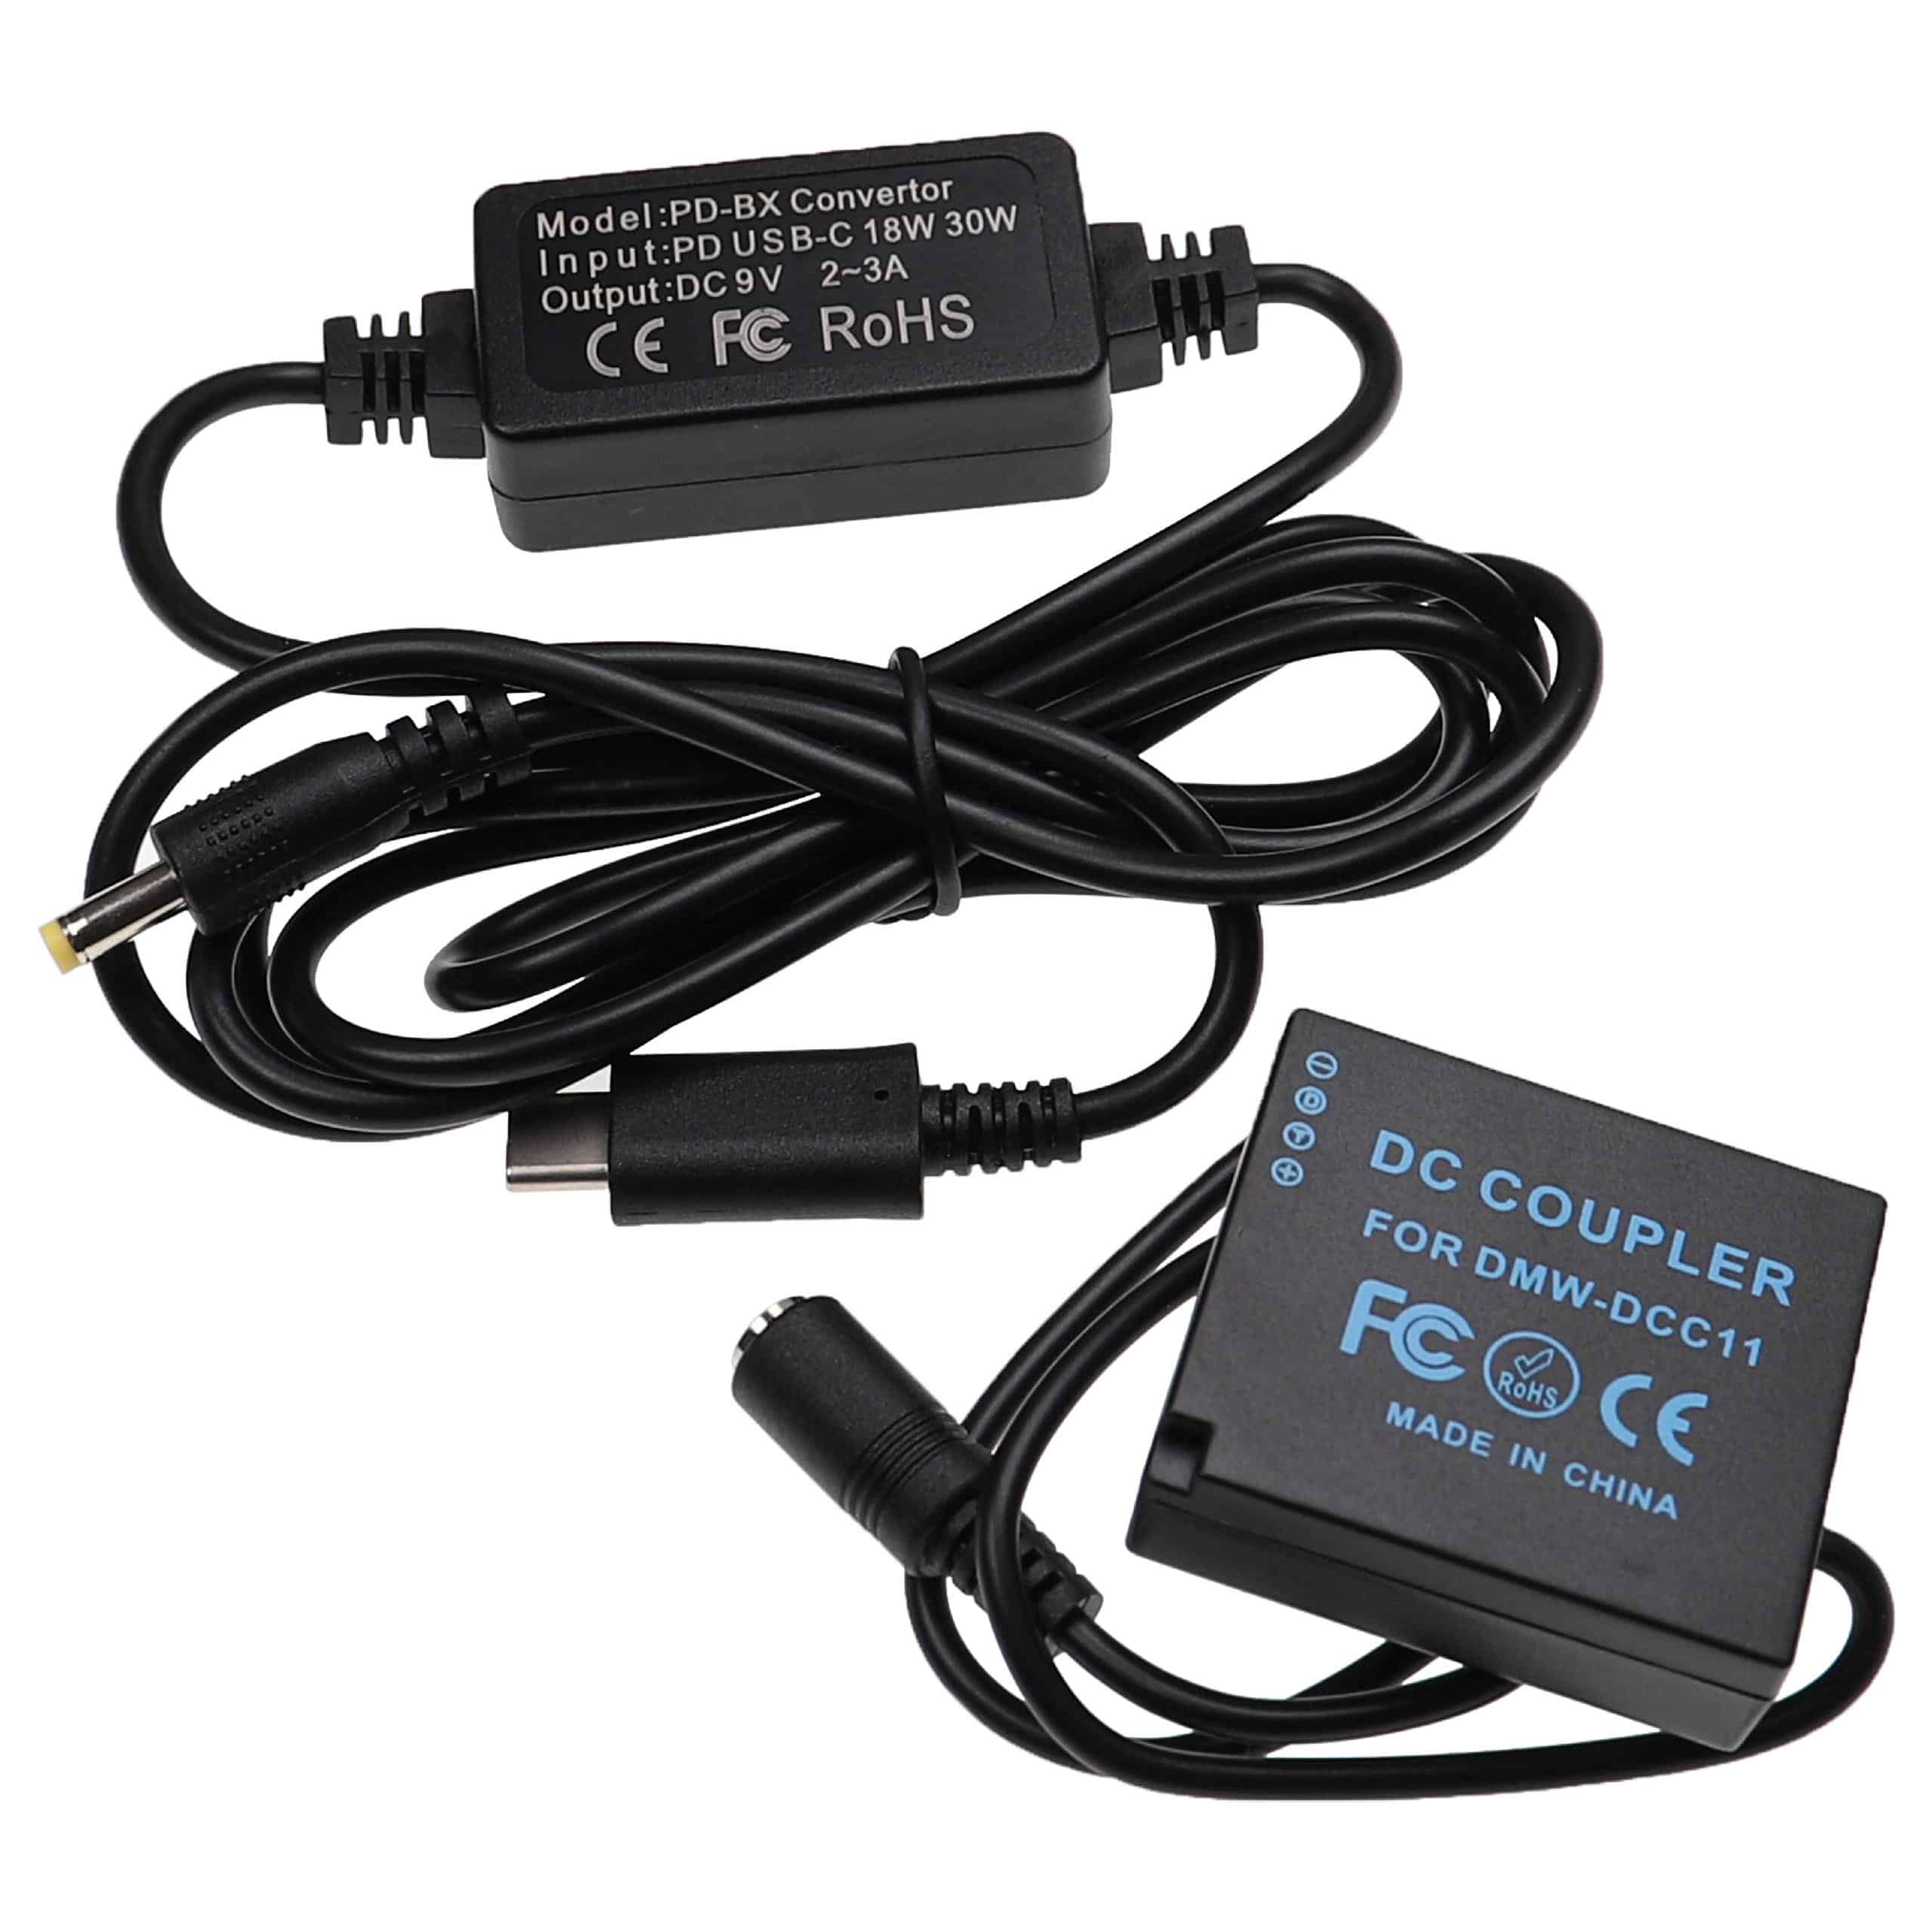 USB Power Supply replaces DMW-AC8EGDMW-AC8 for Camera + DC Coupler as Panasonic DMW-DCC11 - 2 m, 9 V 3.0 A